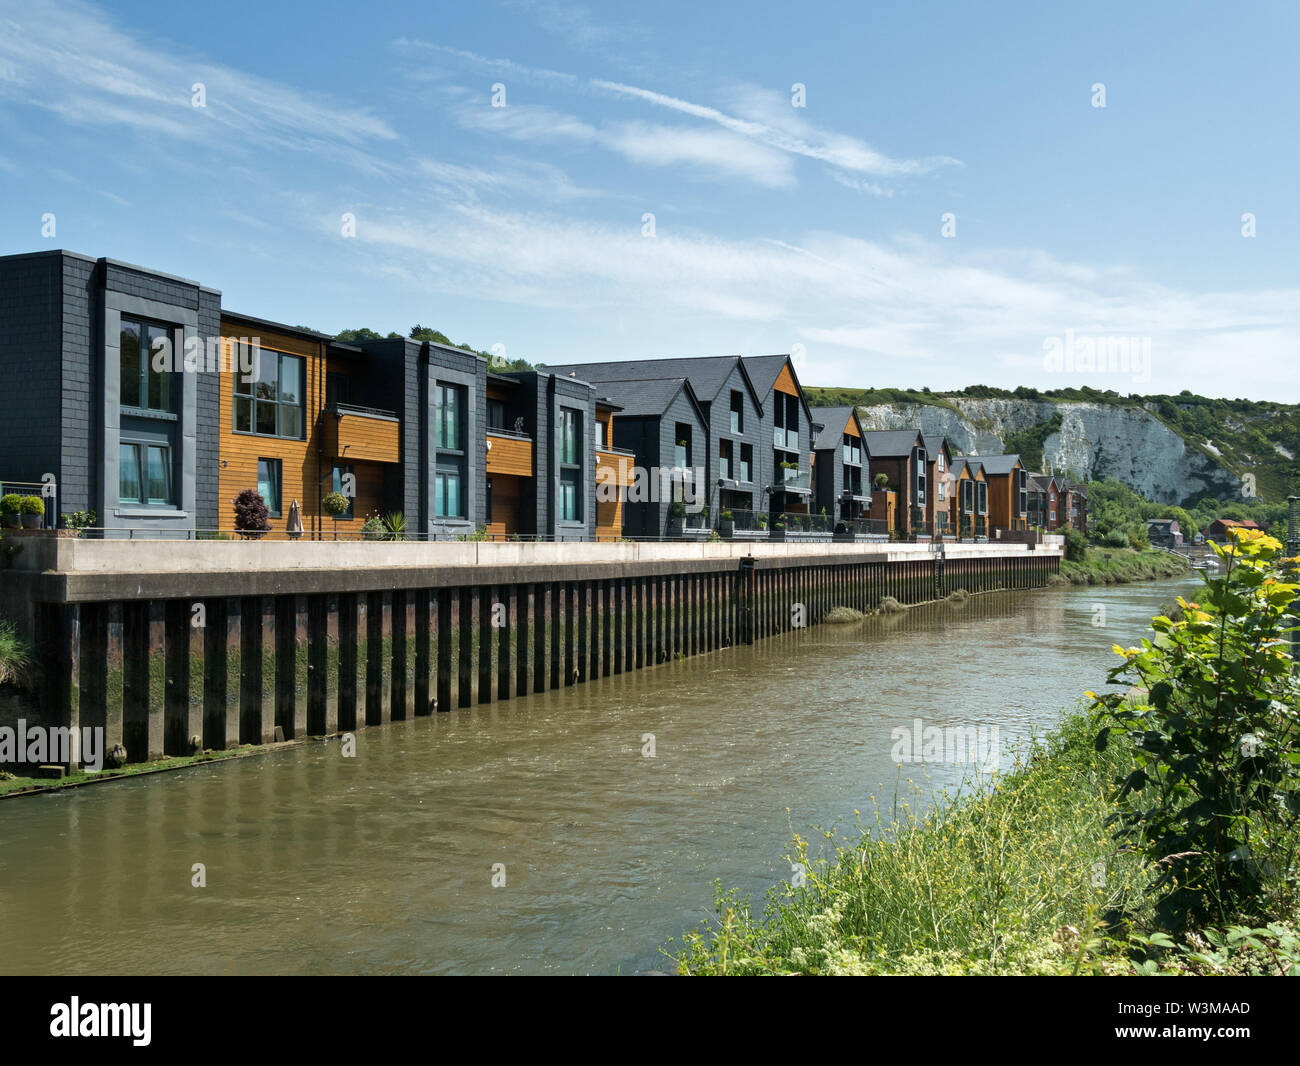 Nouveaux appartements de luxe en bord de la rivière Ouse, Timberyard lane, Lewes, East Sussex, England, UK Banque D'Images